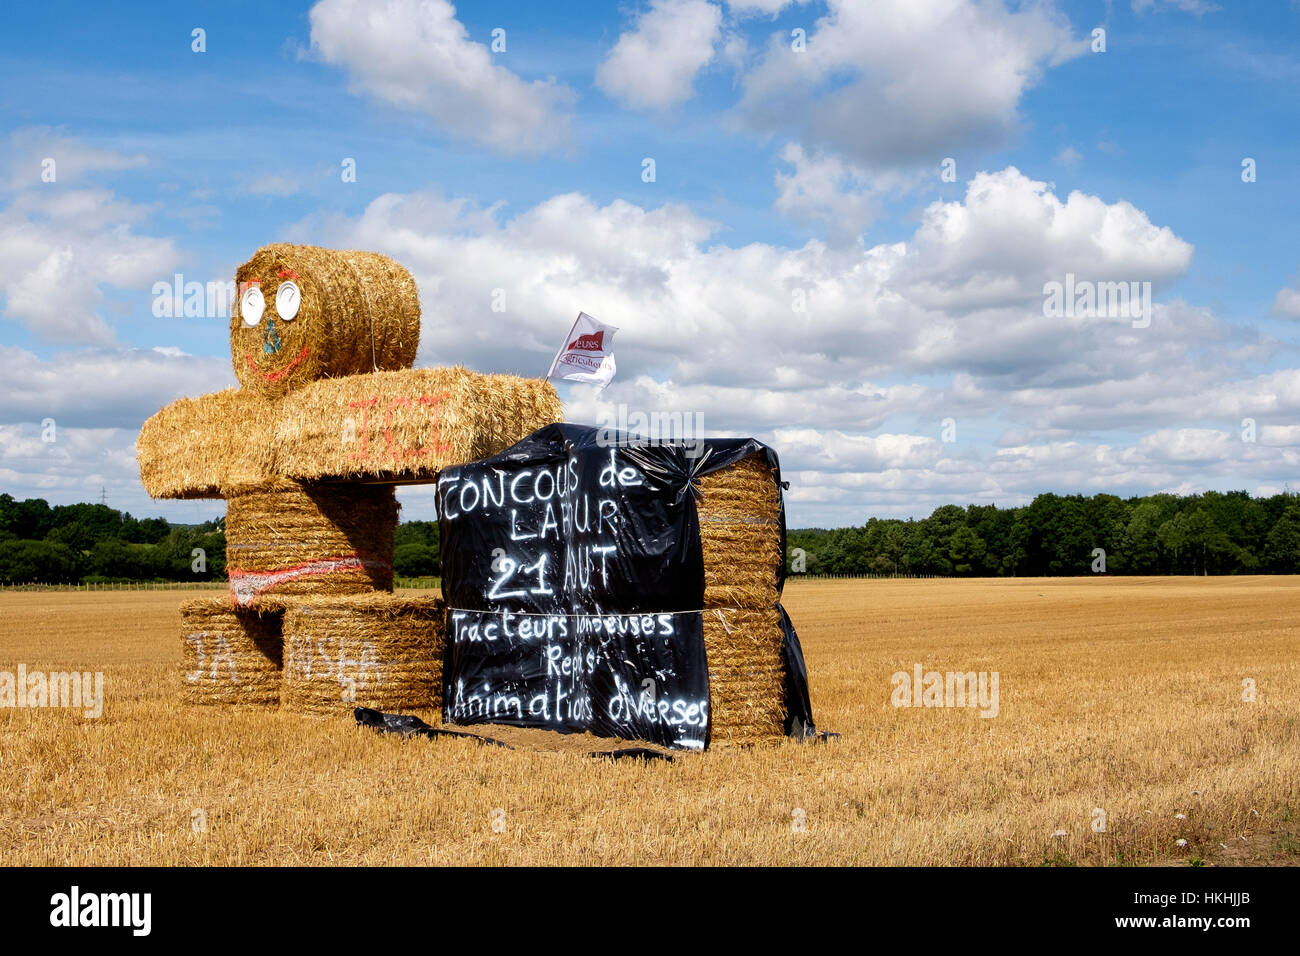 Eine Skulptur von Heuballen Förderung einer bevorstehenden Concours de Labour Young Farmers (Jeunes Agriculteurs), Frankreich Stockfoto